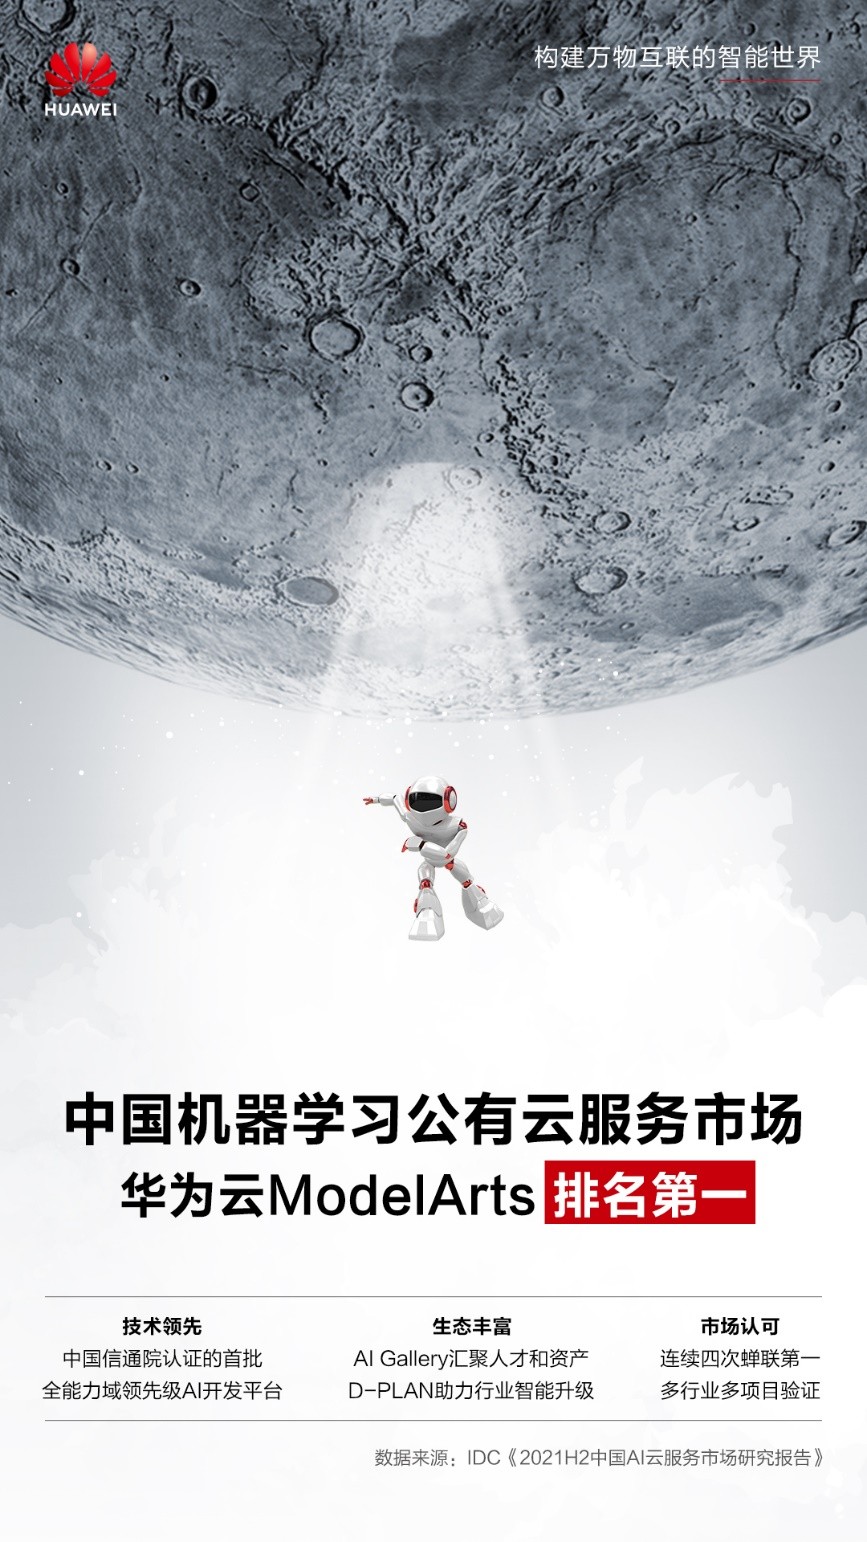 IDC 2021H2中国机器学习公有云服务市场：华为云ModelArts第一